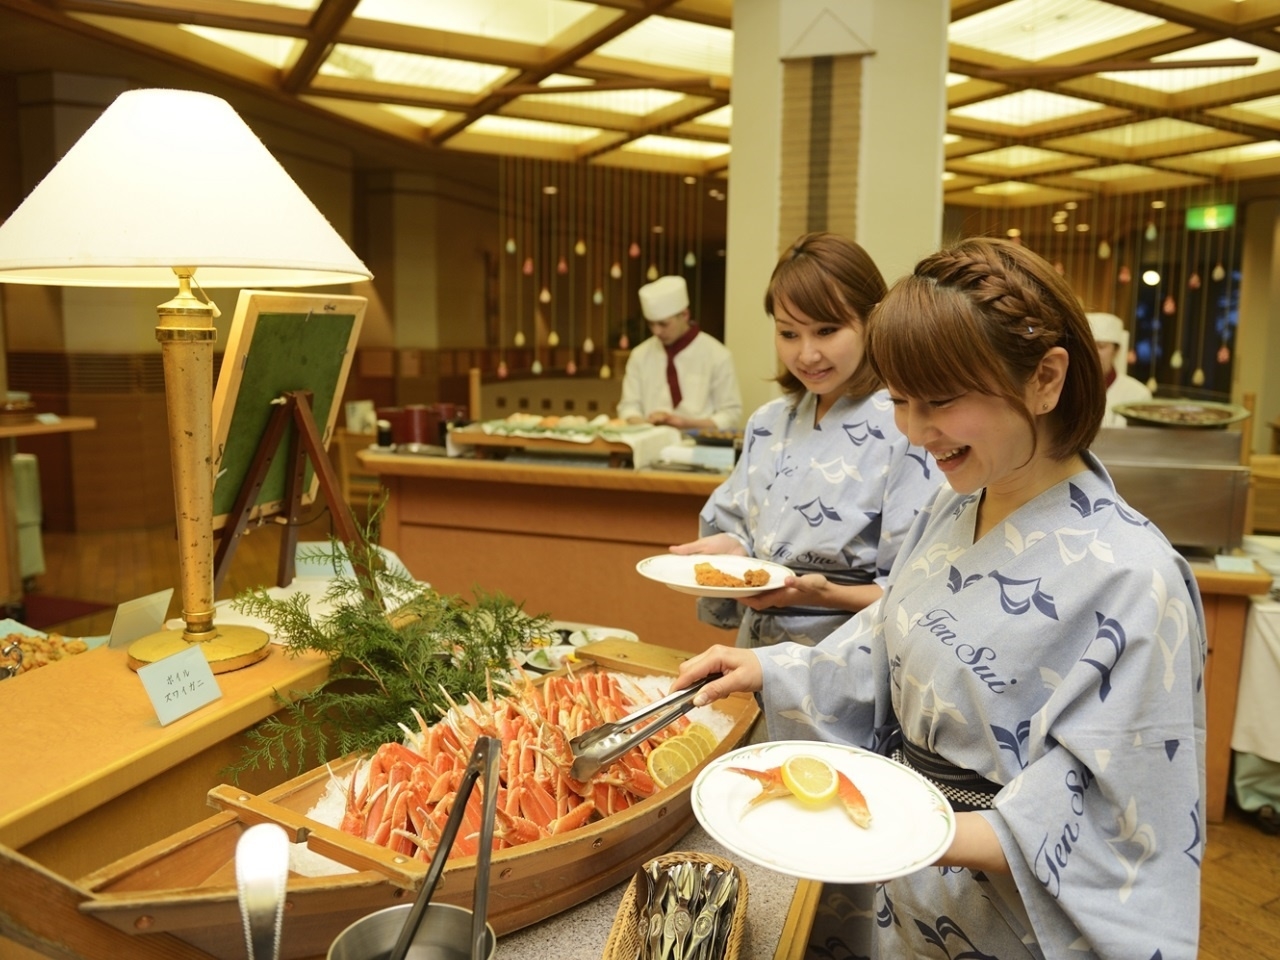 和テイスト☆旅館の「渚のおもてなし料理」コースプラン♪≪夕食時お飲み物付き≫ 